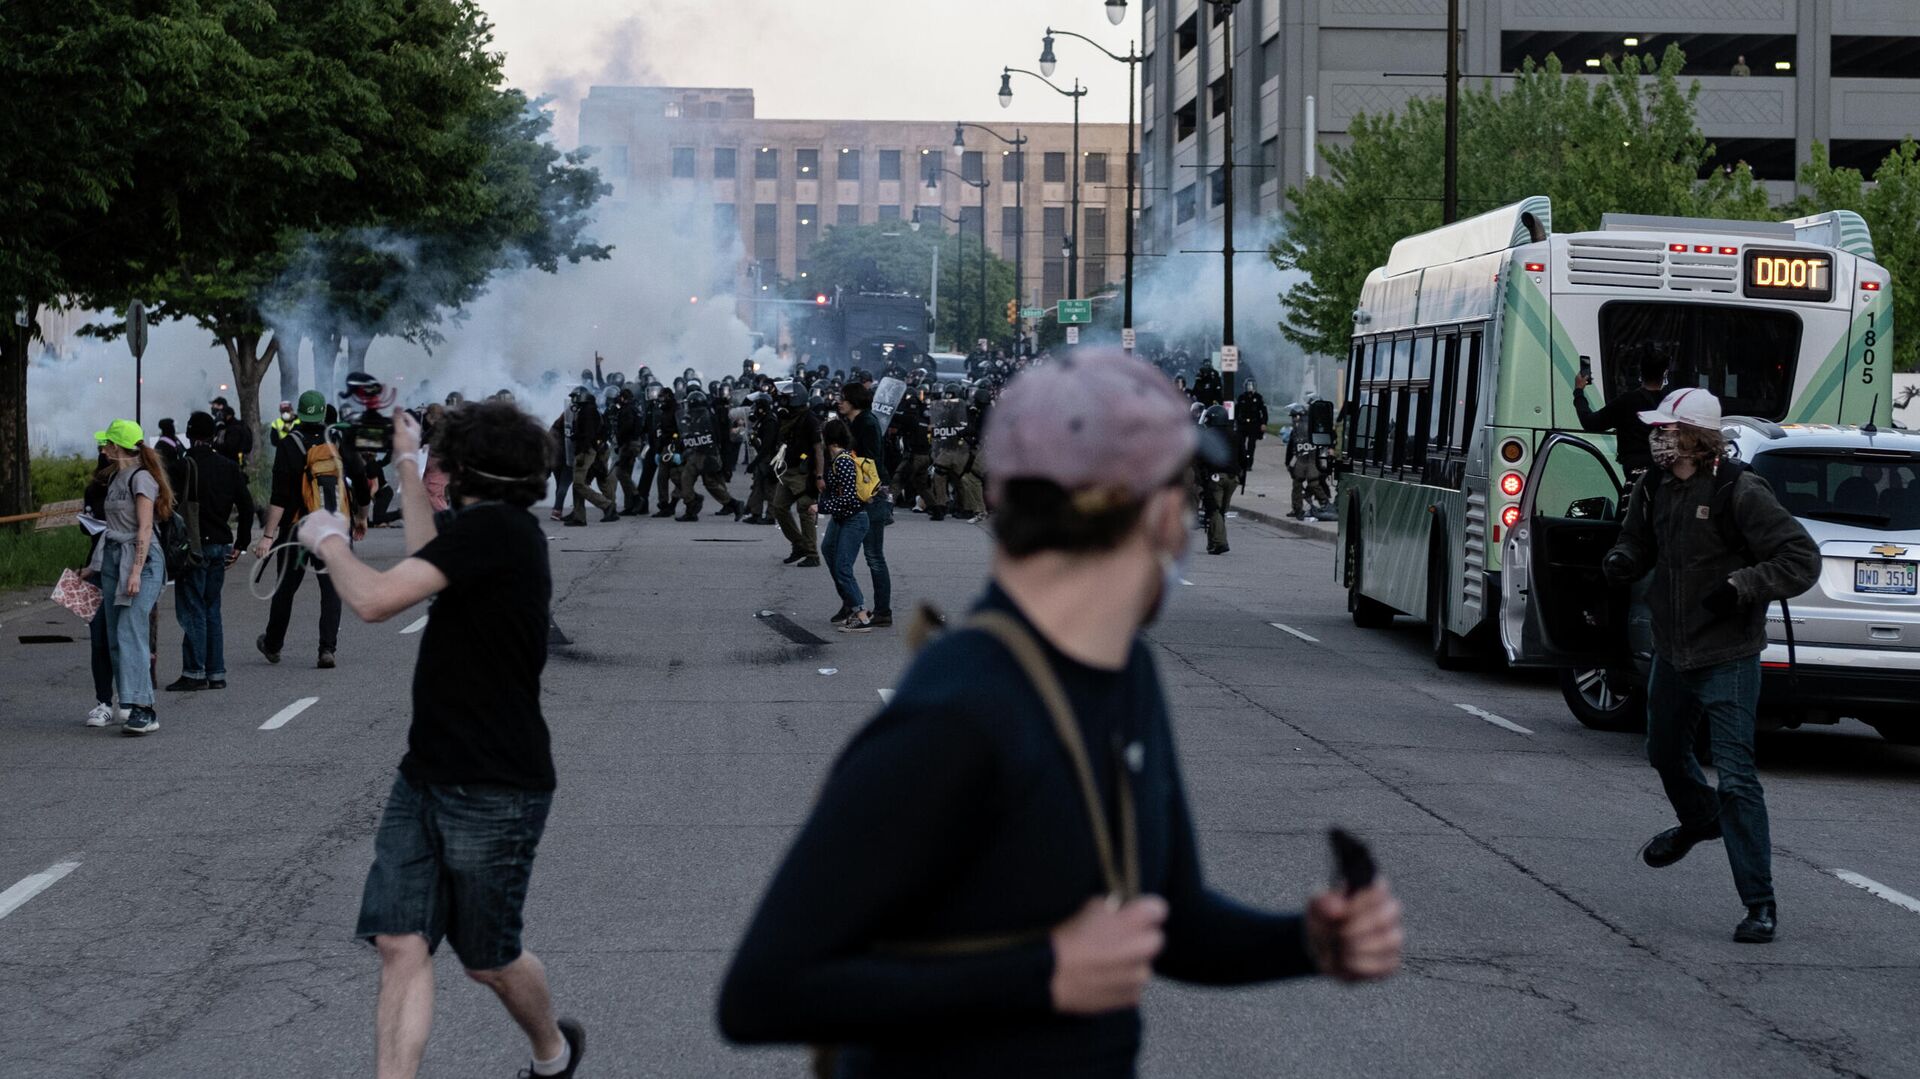 Полиция разгоняет демонстрацию с применением слезоточивого газа в Детройте, США - РИА Новости, 1920, 05.09.2020